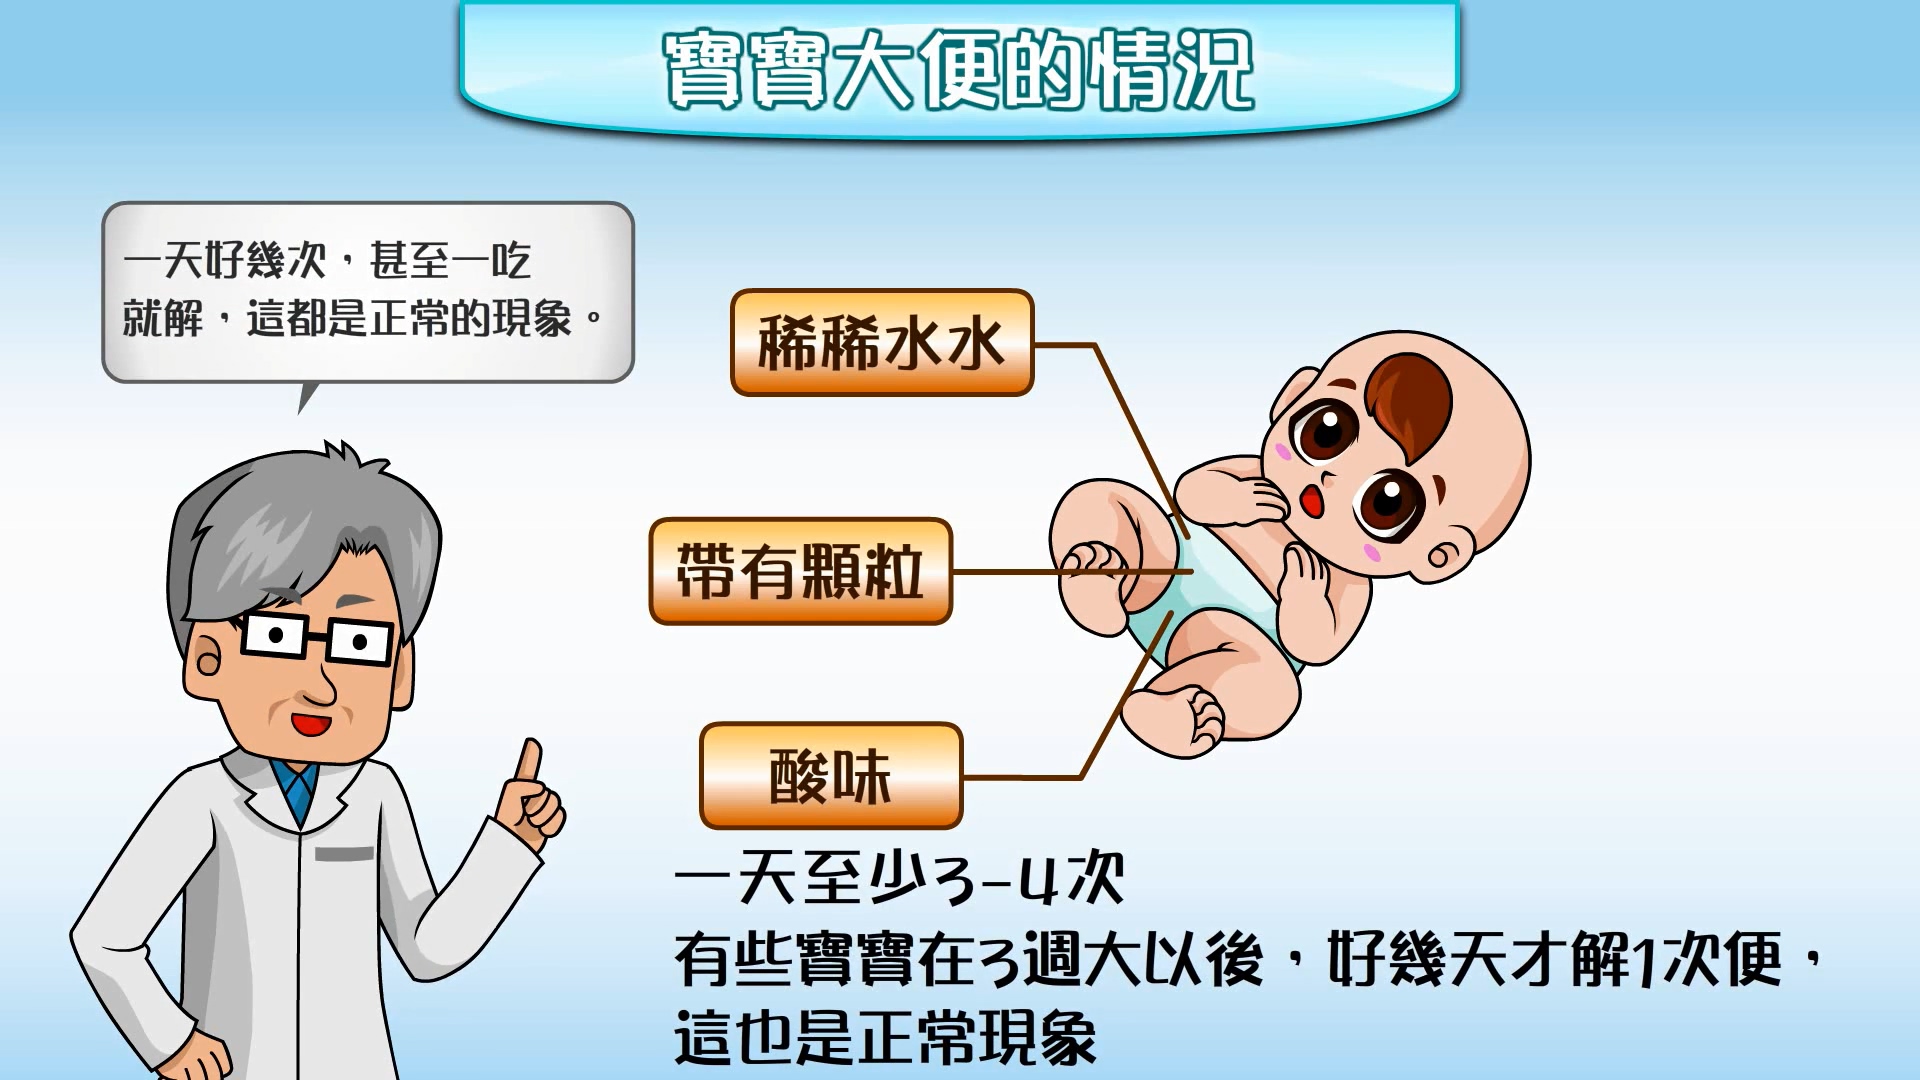 嬰幼兒健康照護衛教動畫_03_認識大便卡_家長版文章照片